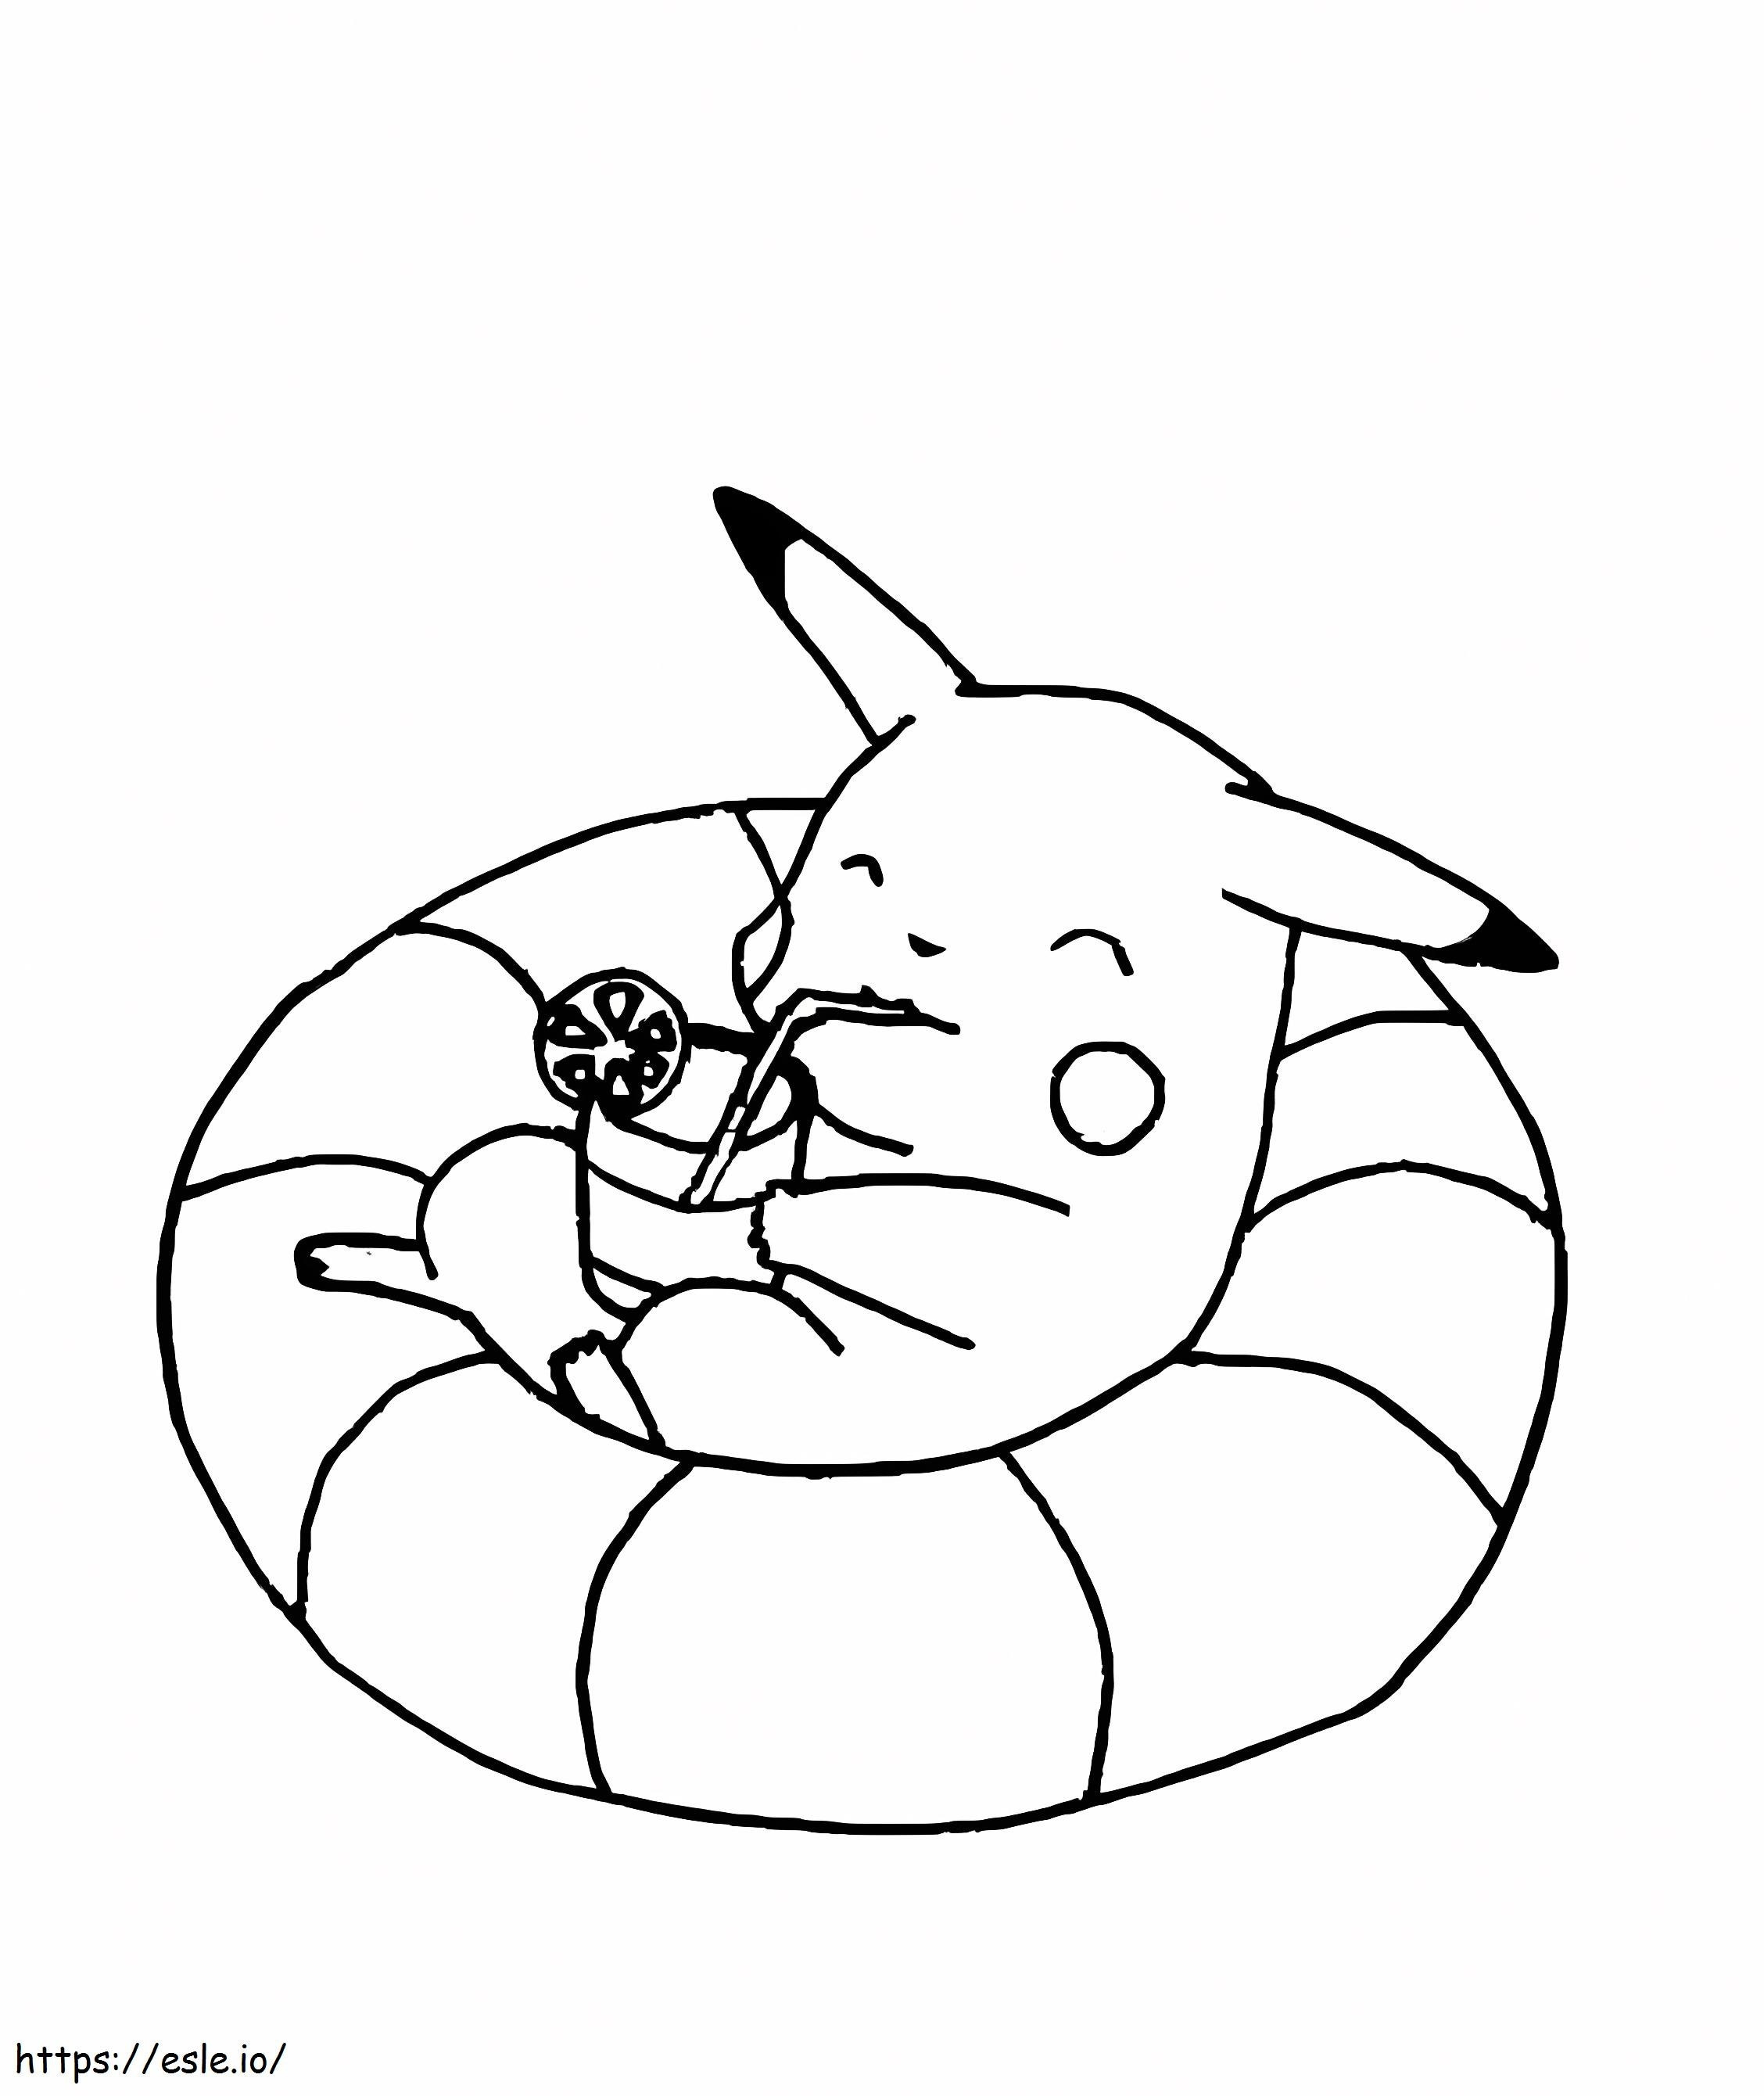 Coloriage Pikachu s'arrête à imprimer dessin